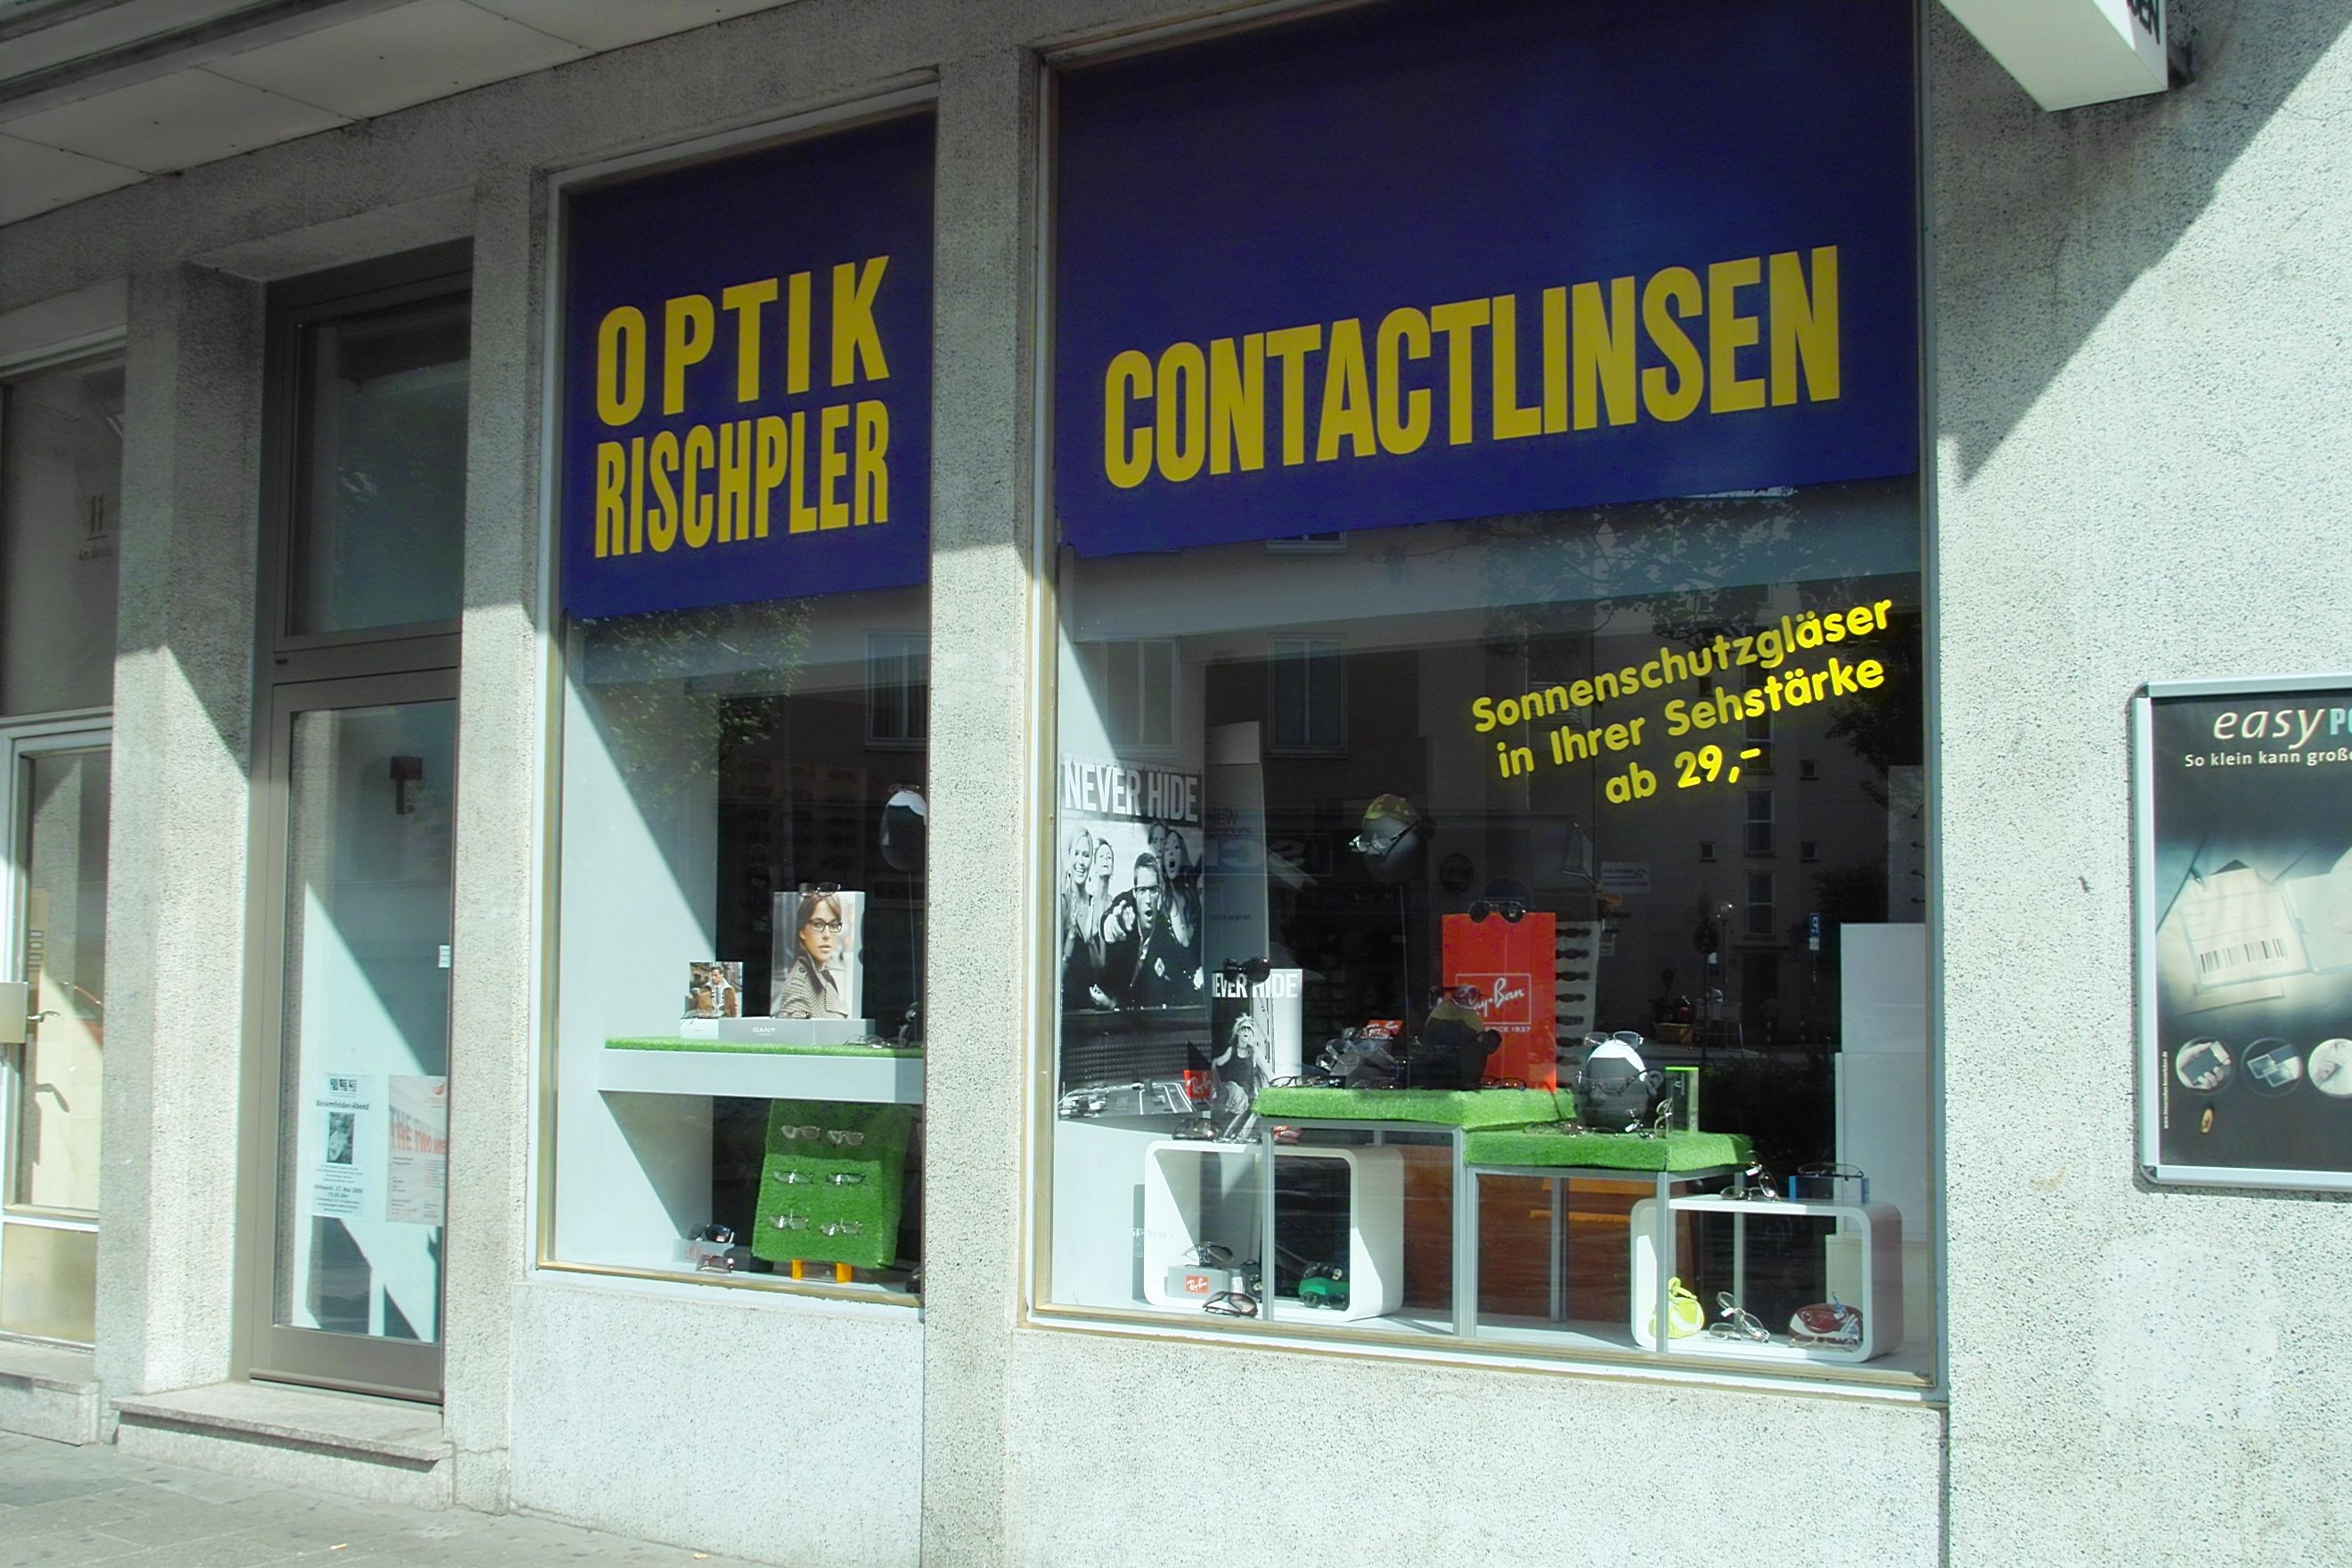 Bild 1 Optik Rischpler in München